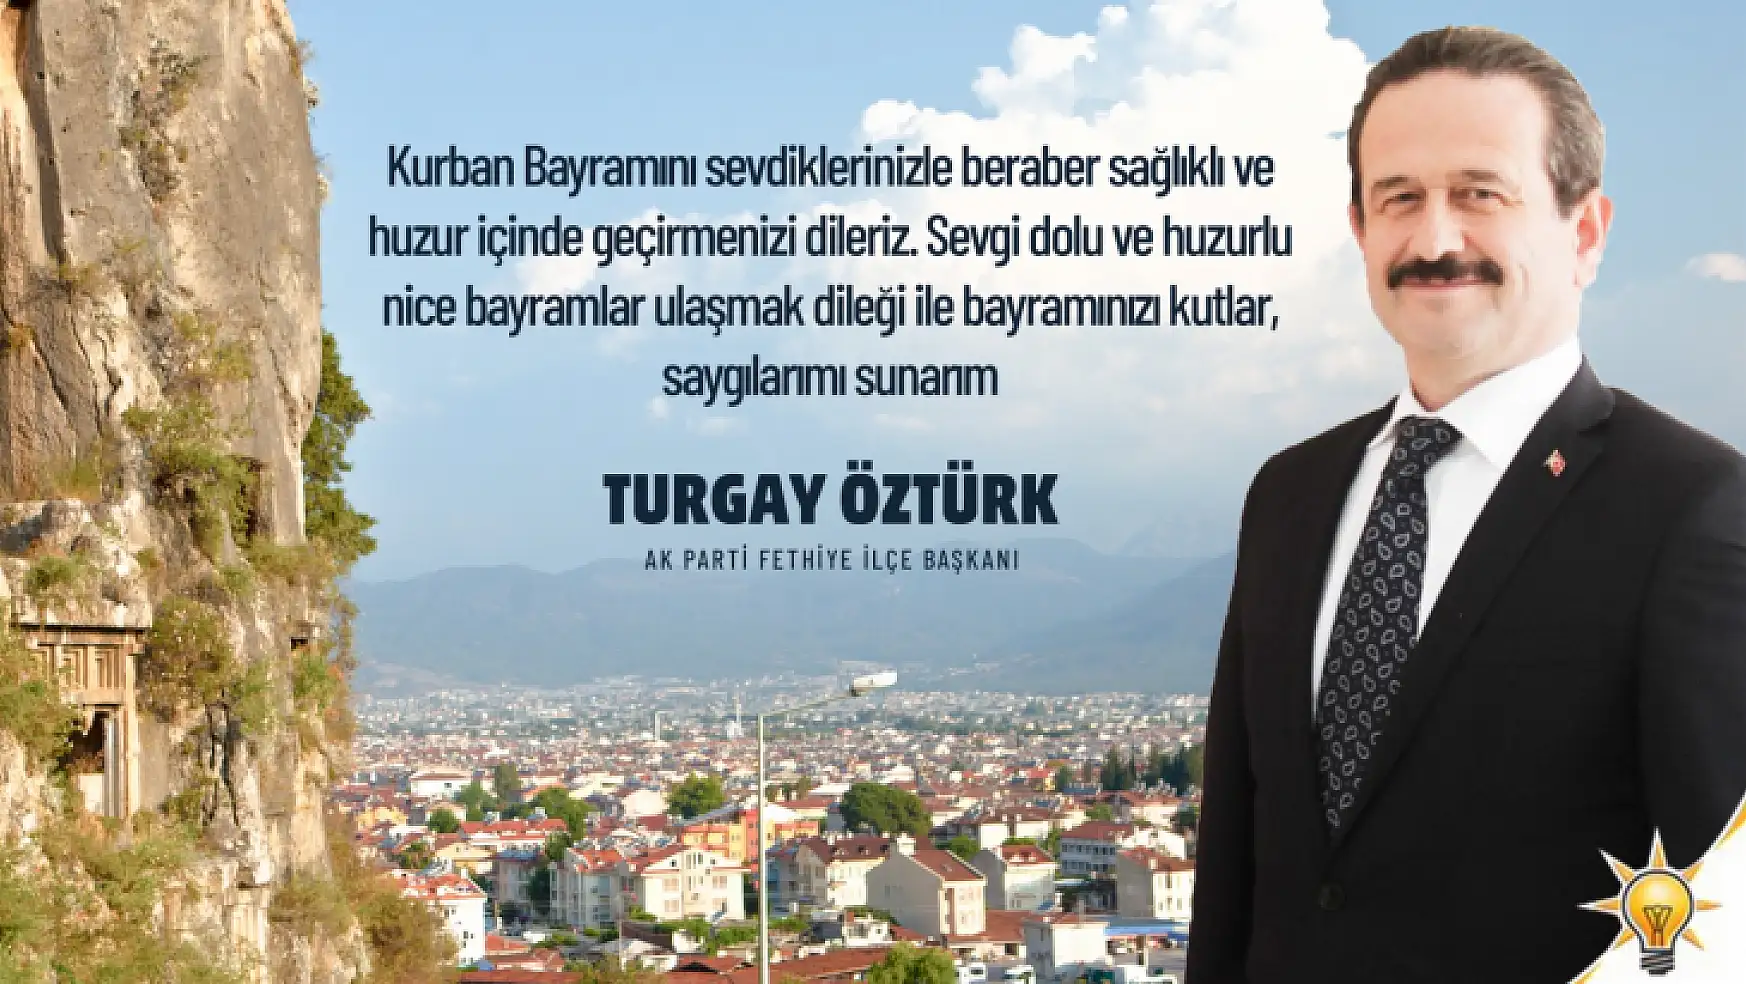 AK Parti Fethiye İlçe Başkanı Turgay Öztürk, Kurban Bayramı'nı kutladı